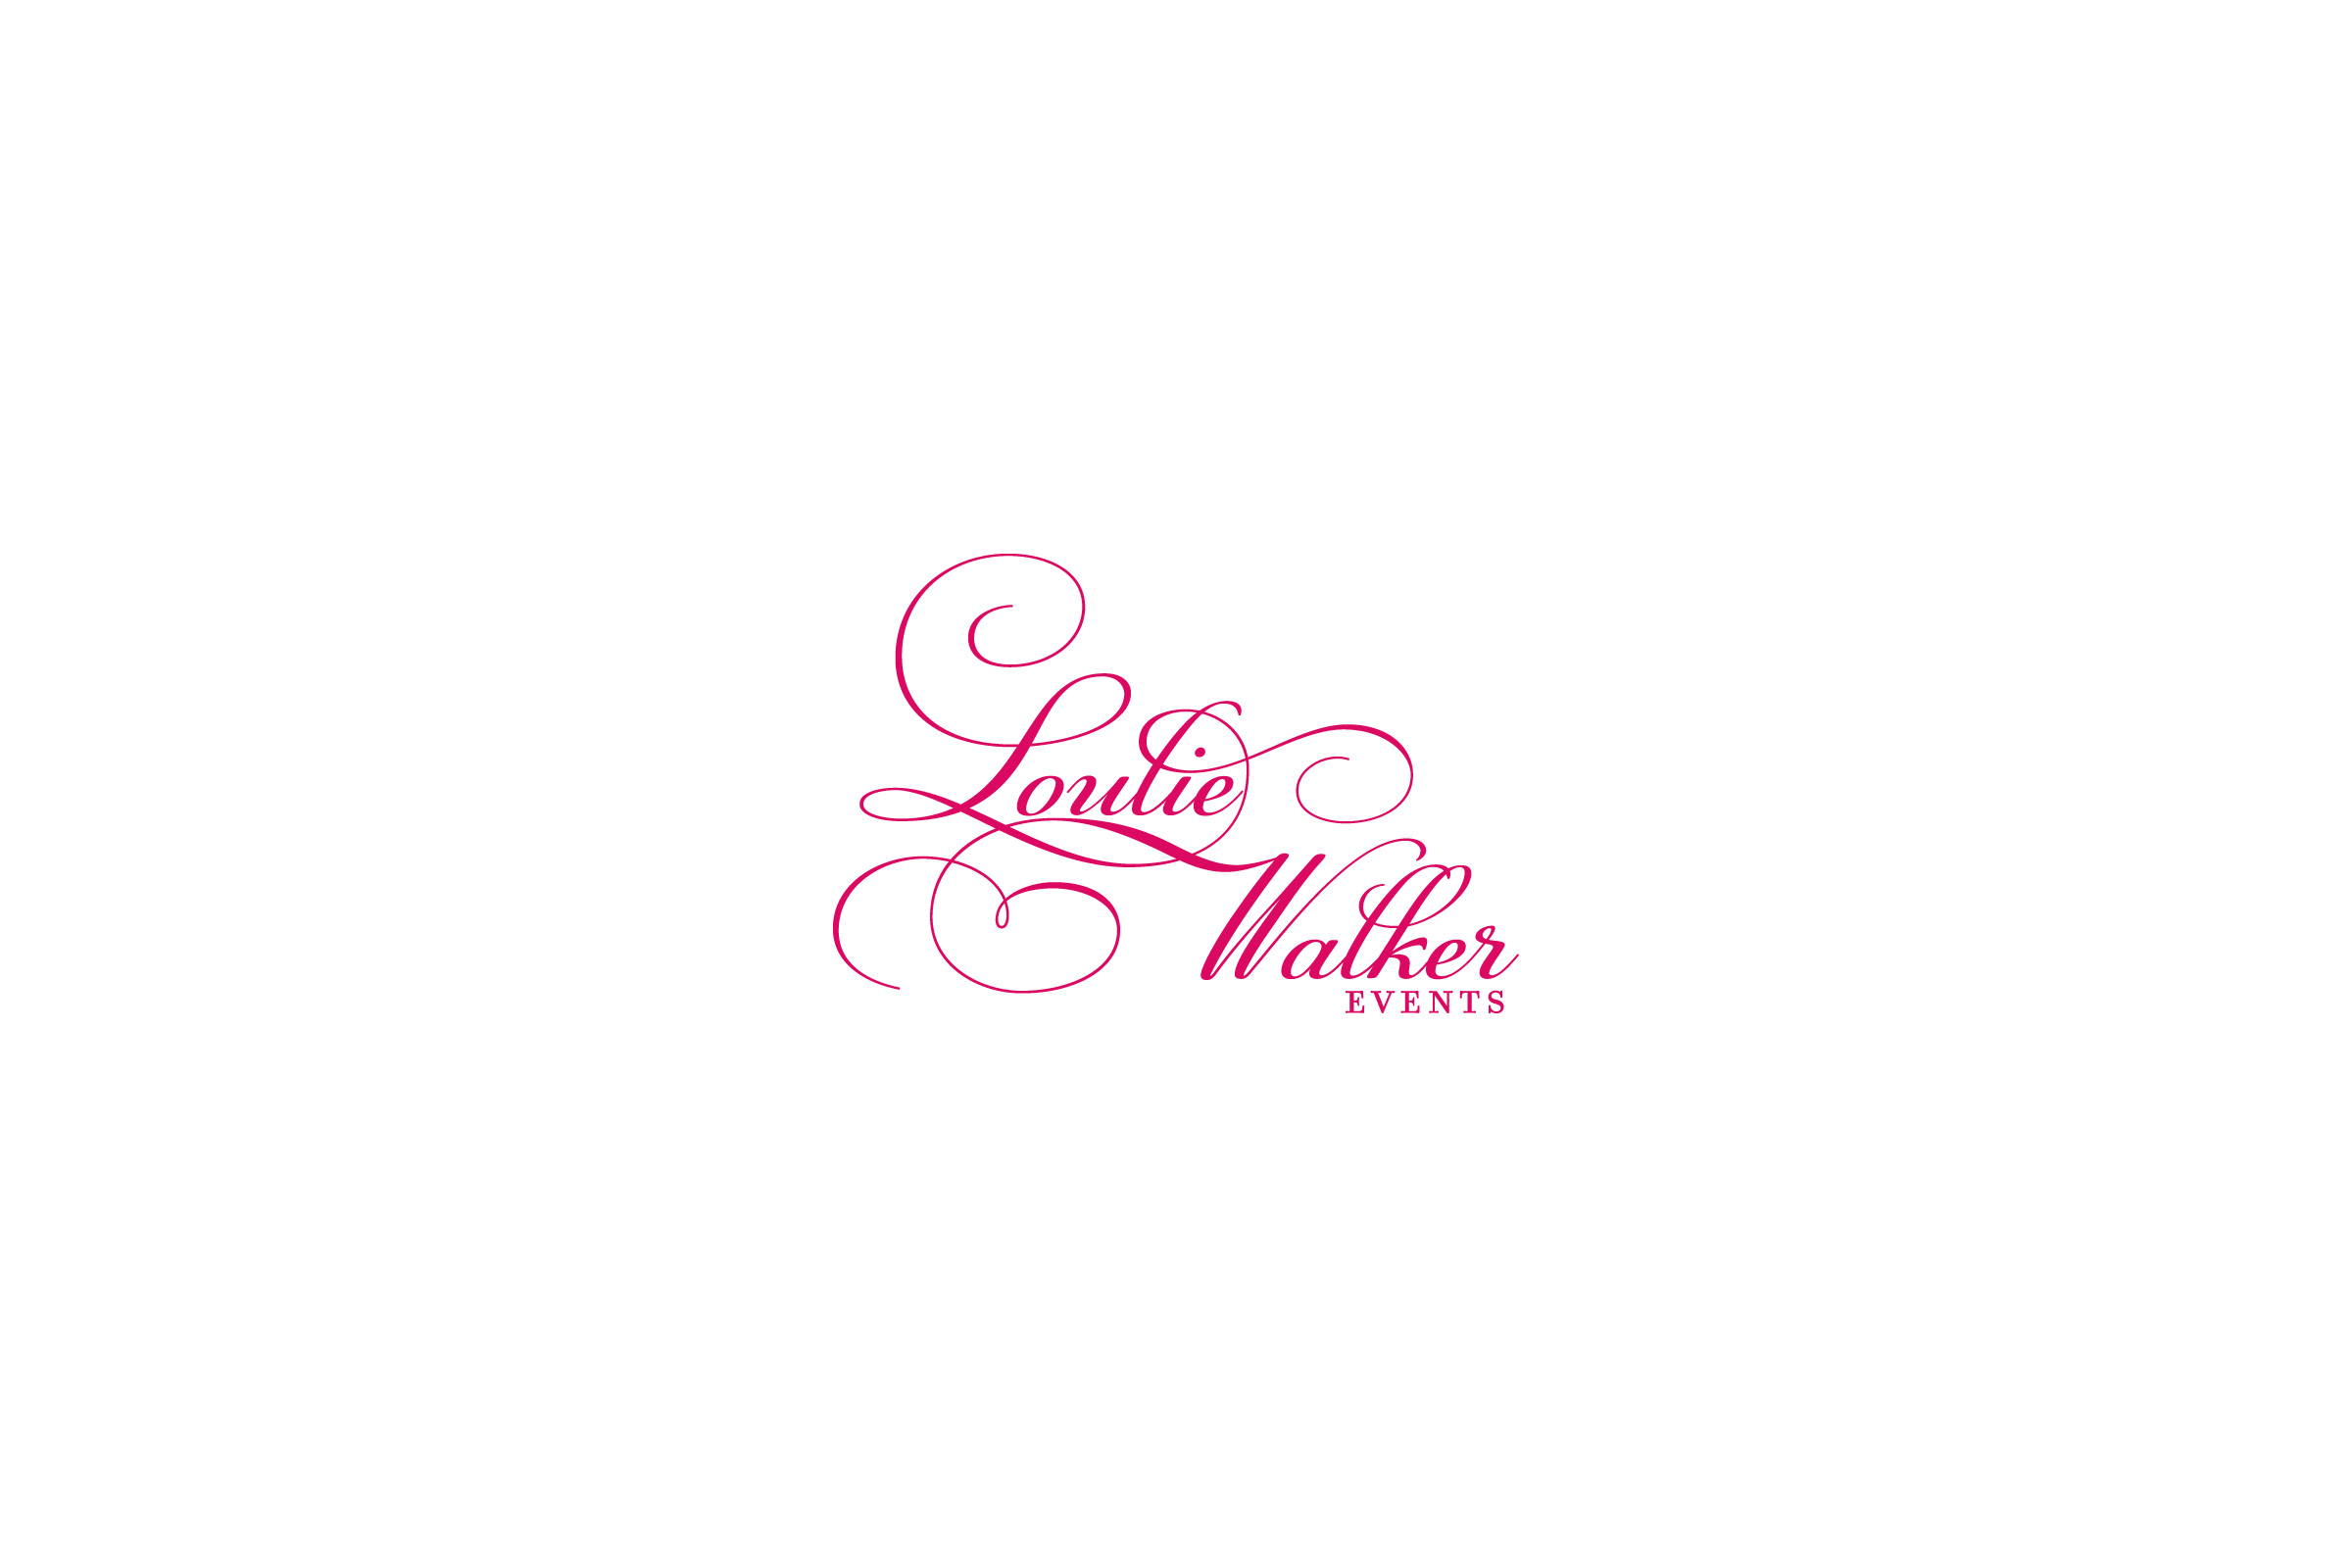 Loulie Walker Events